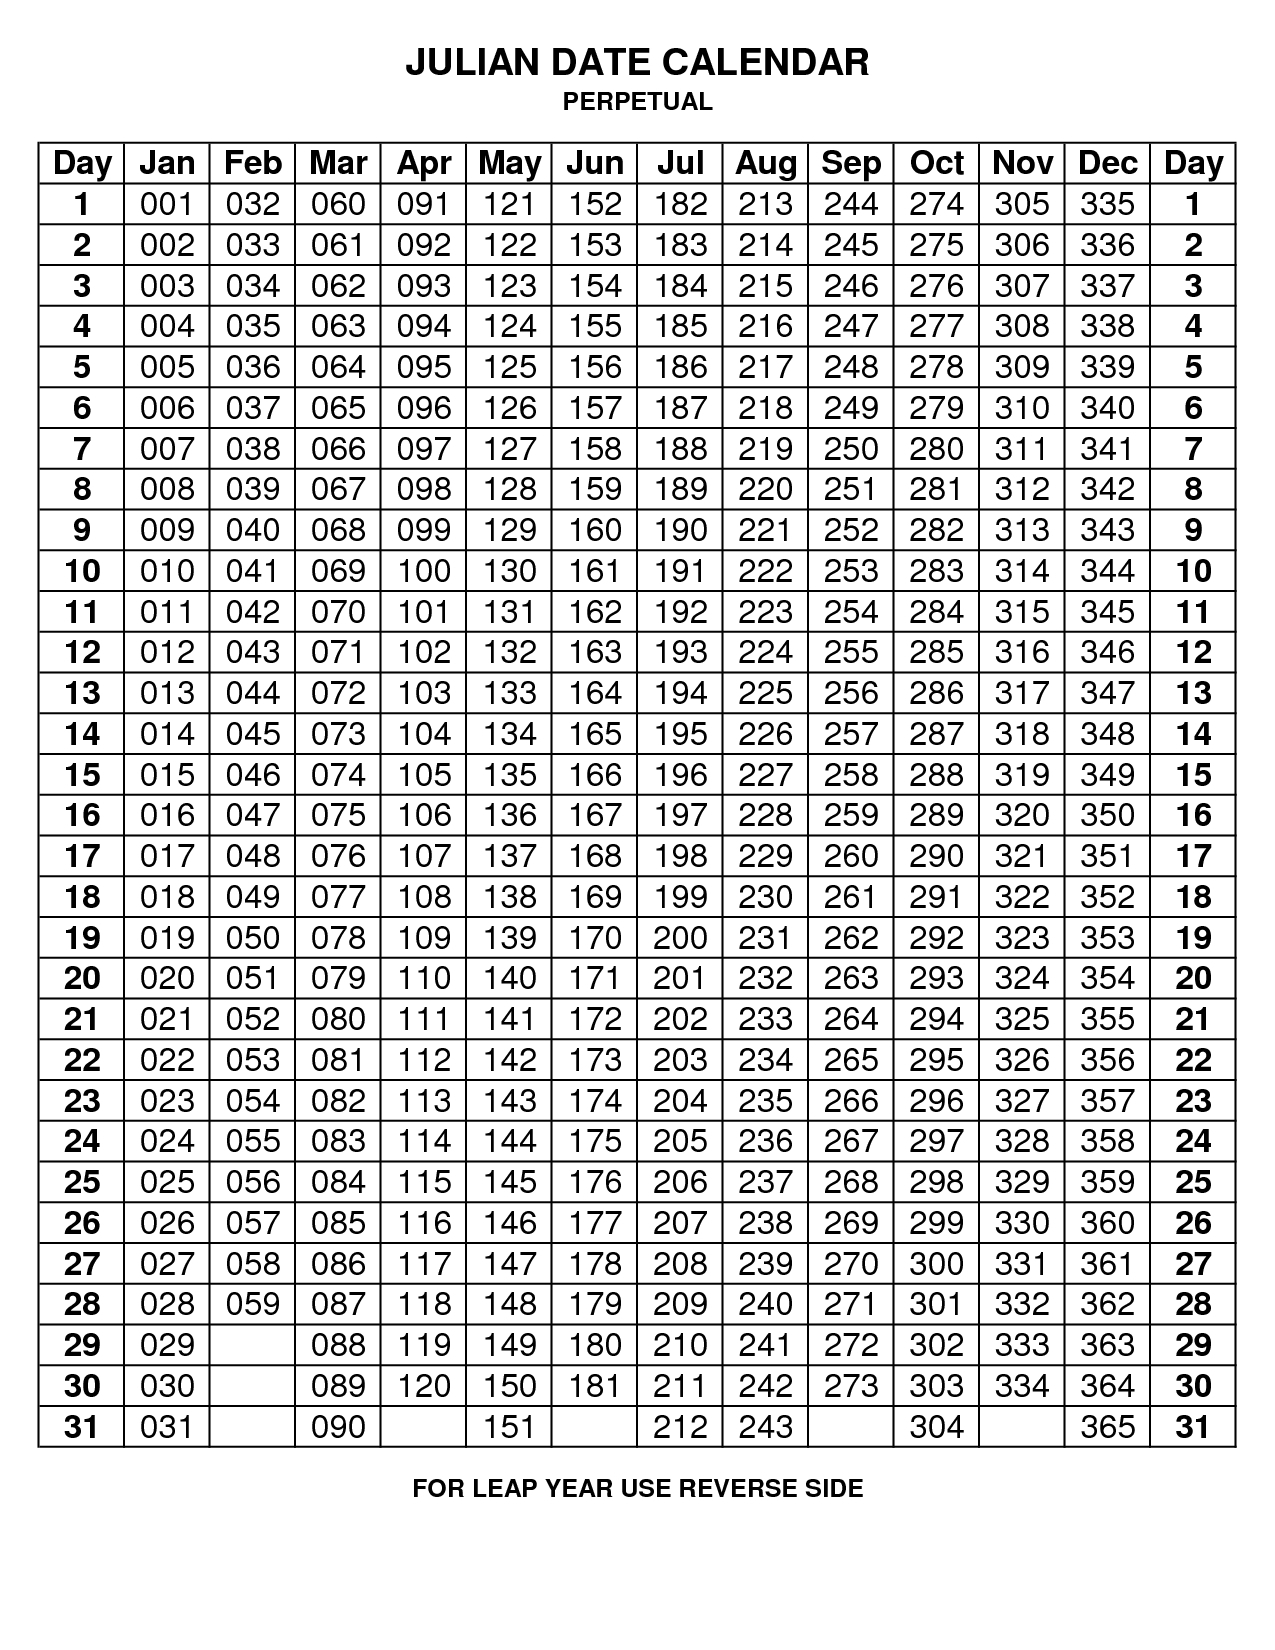 Julian Date Calendar 2020 | Calendar For Planning within 2018 Julian Calendar Quadax